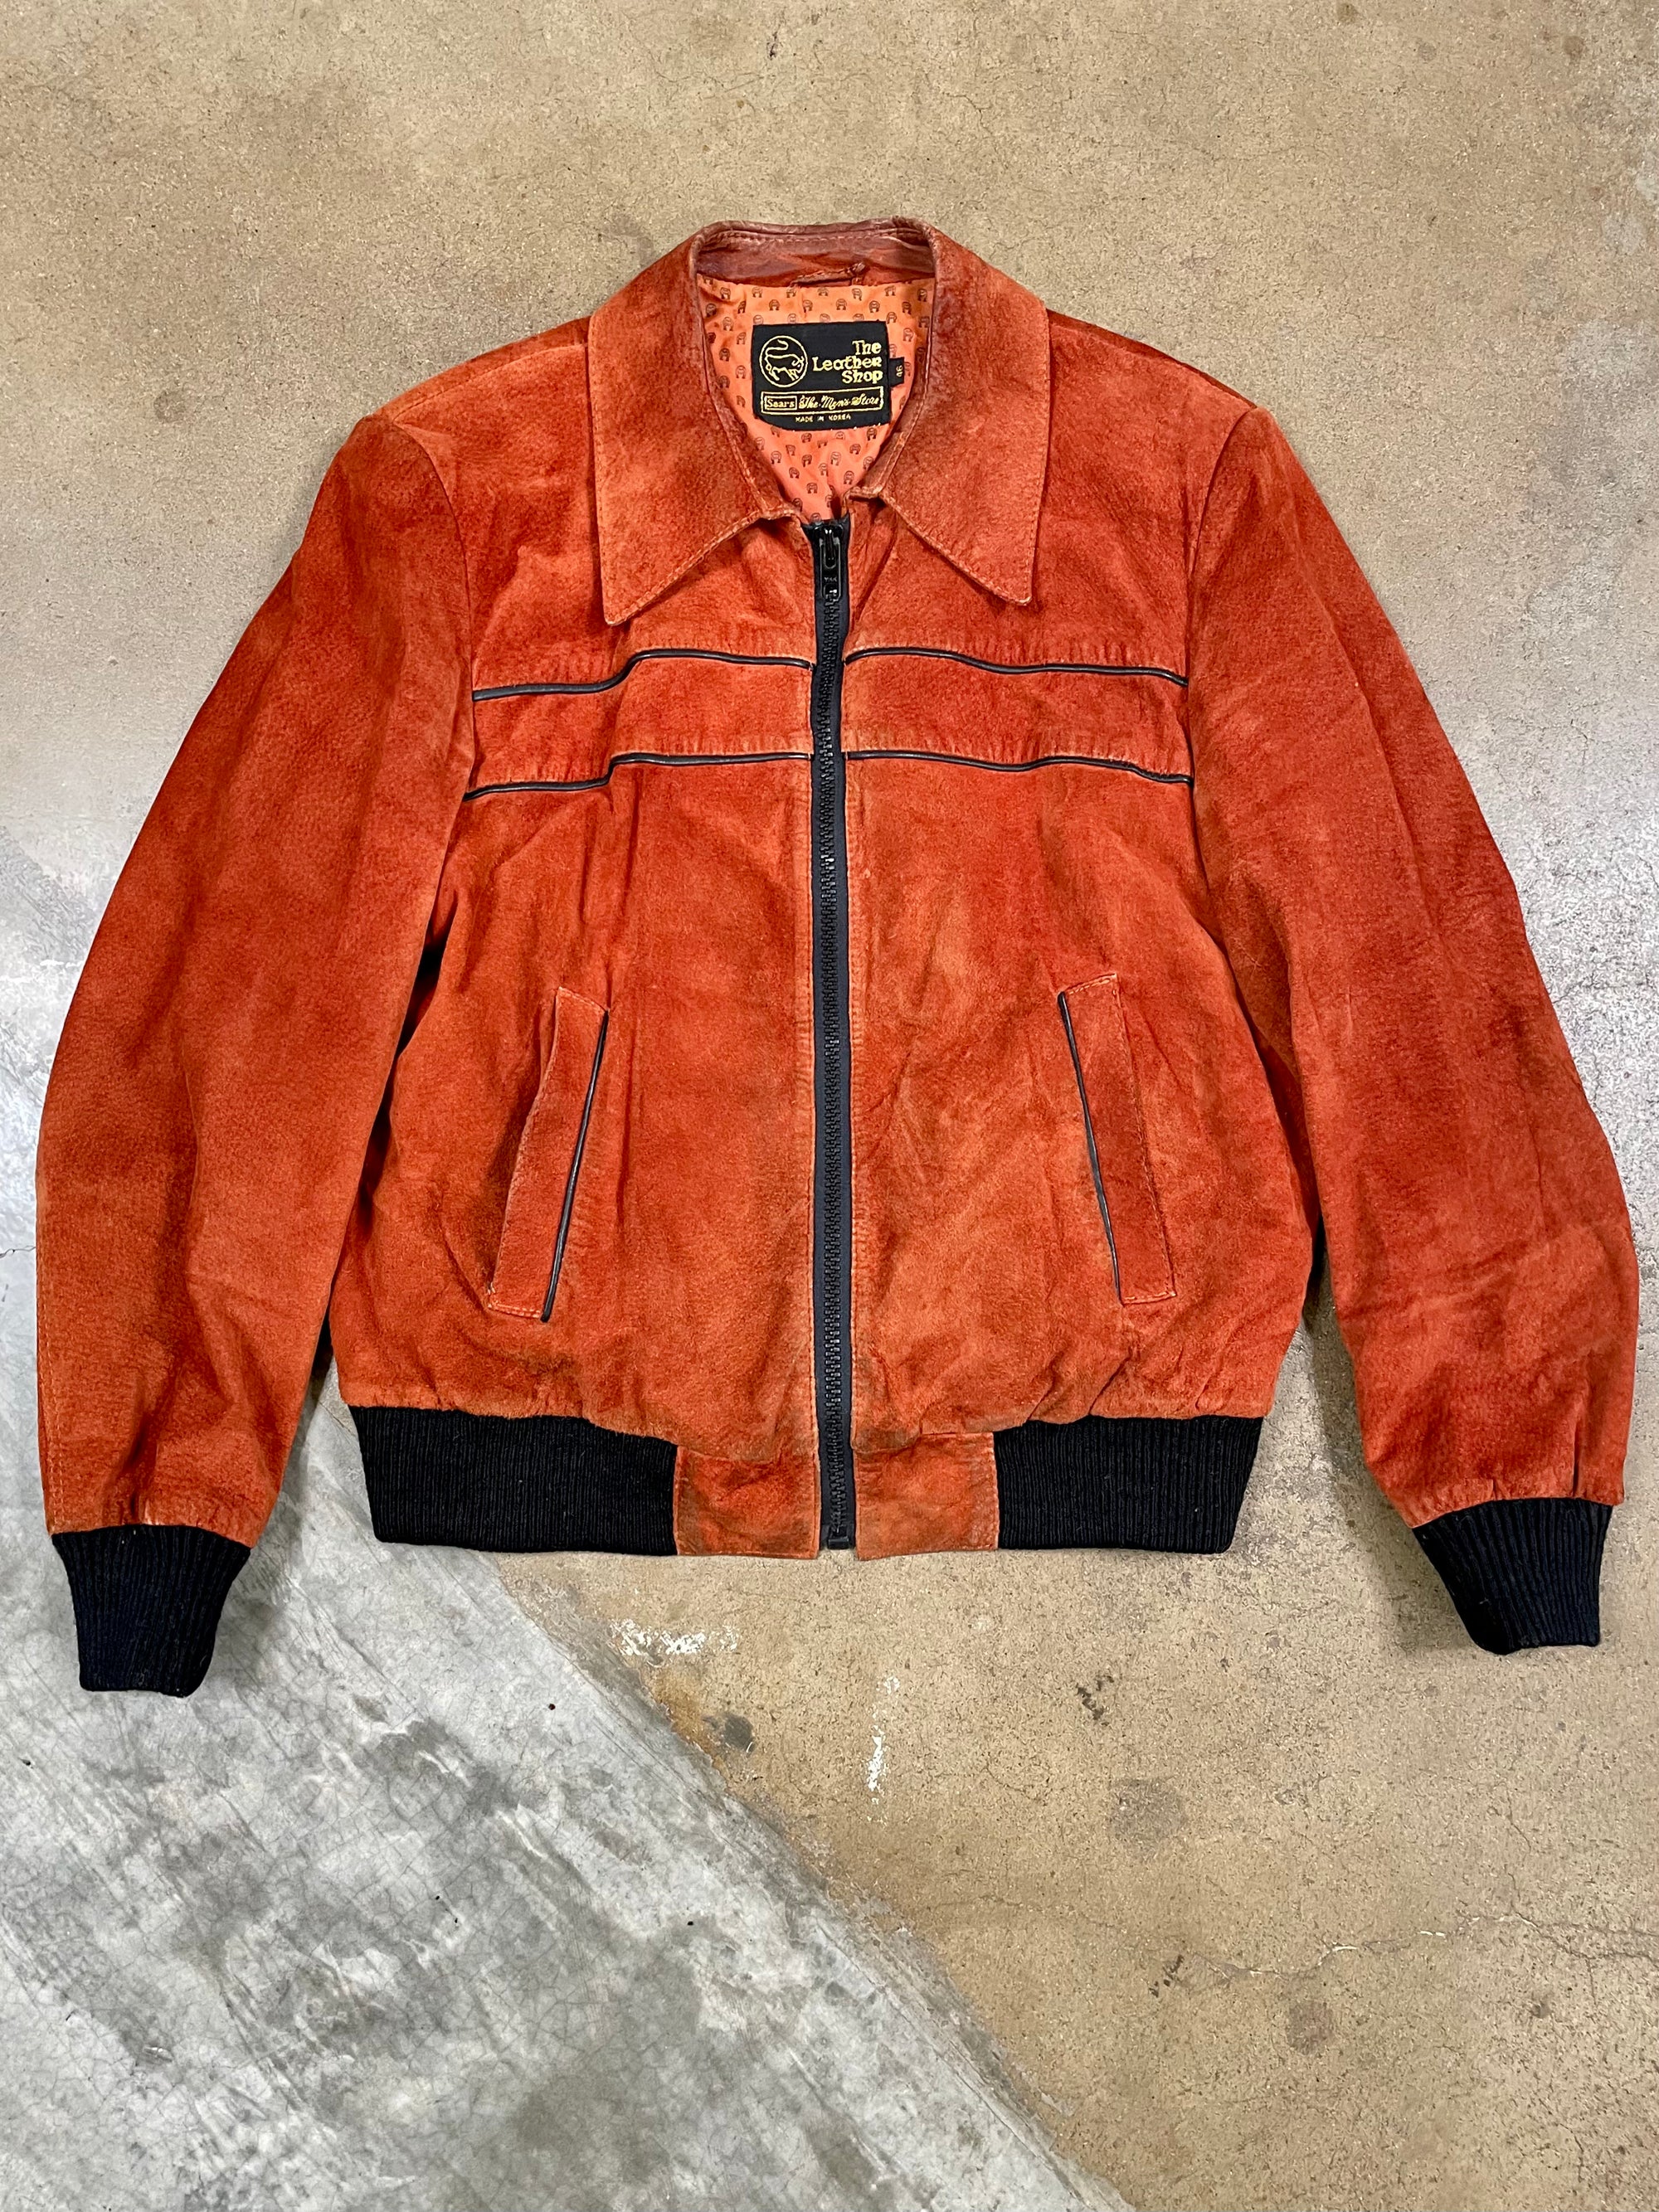 Vintage Sears Orange Suede Jacket